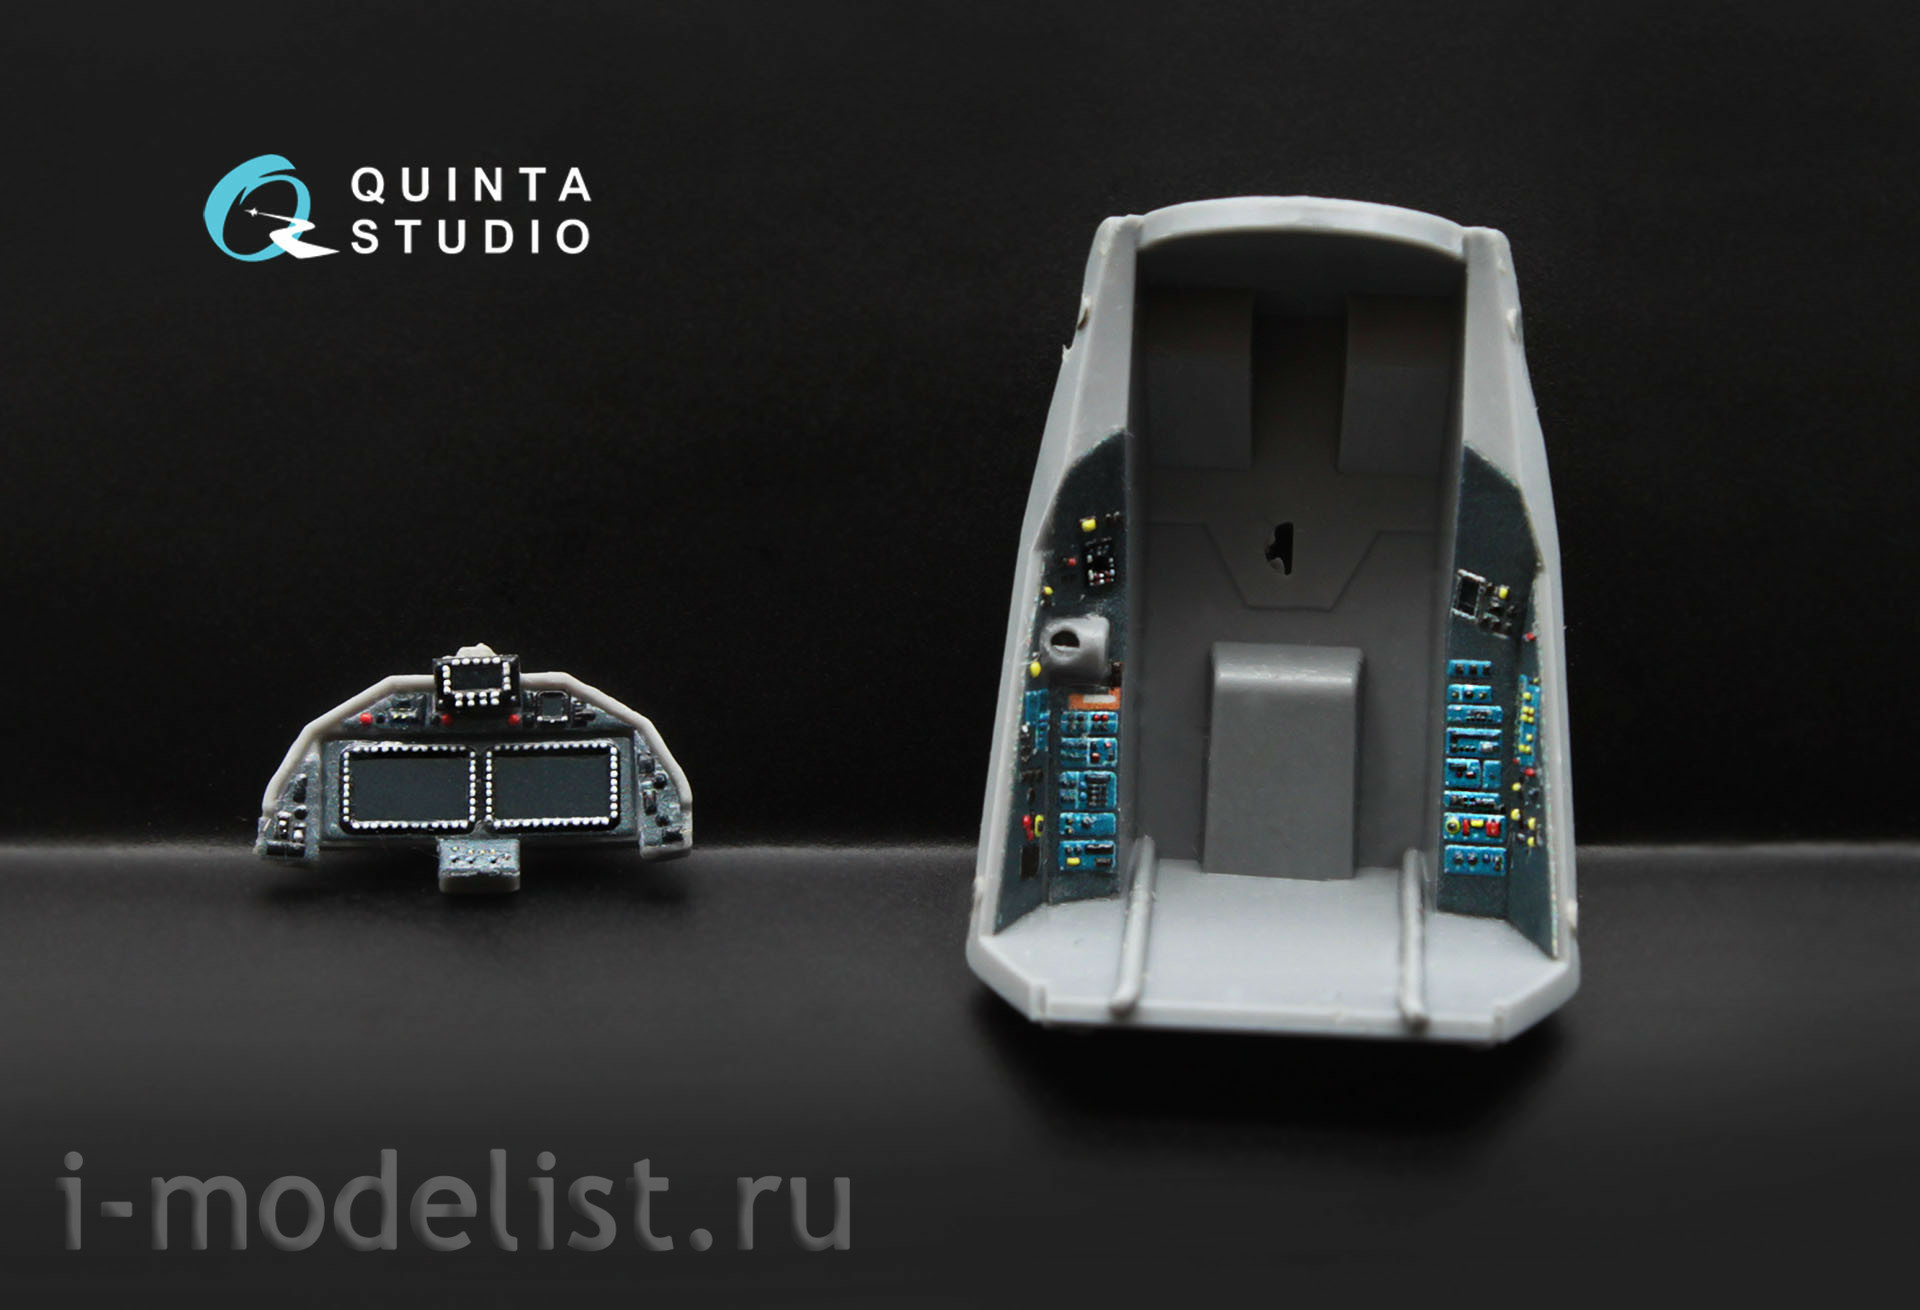 QD72004 Quinta Studio 1/72 3D Декаль интерьера кабины Суххой-57 (для модели Звезда 7319)